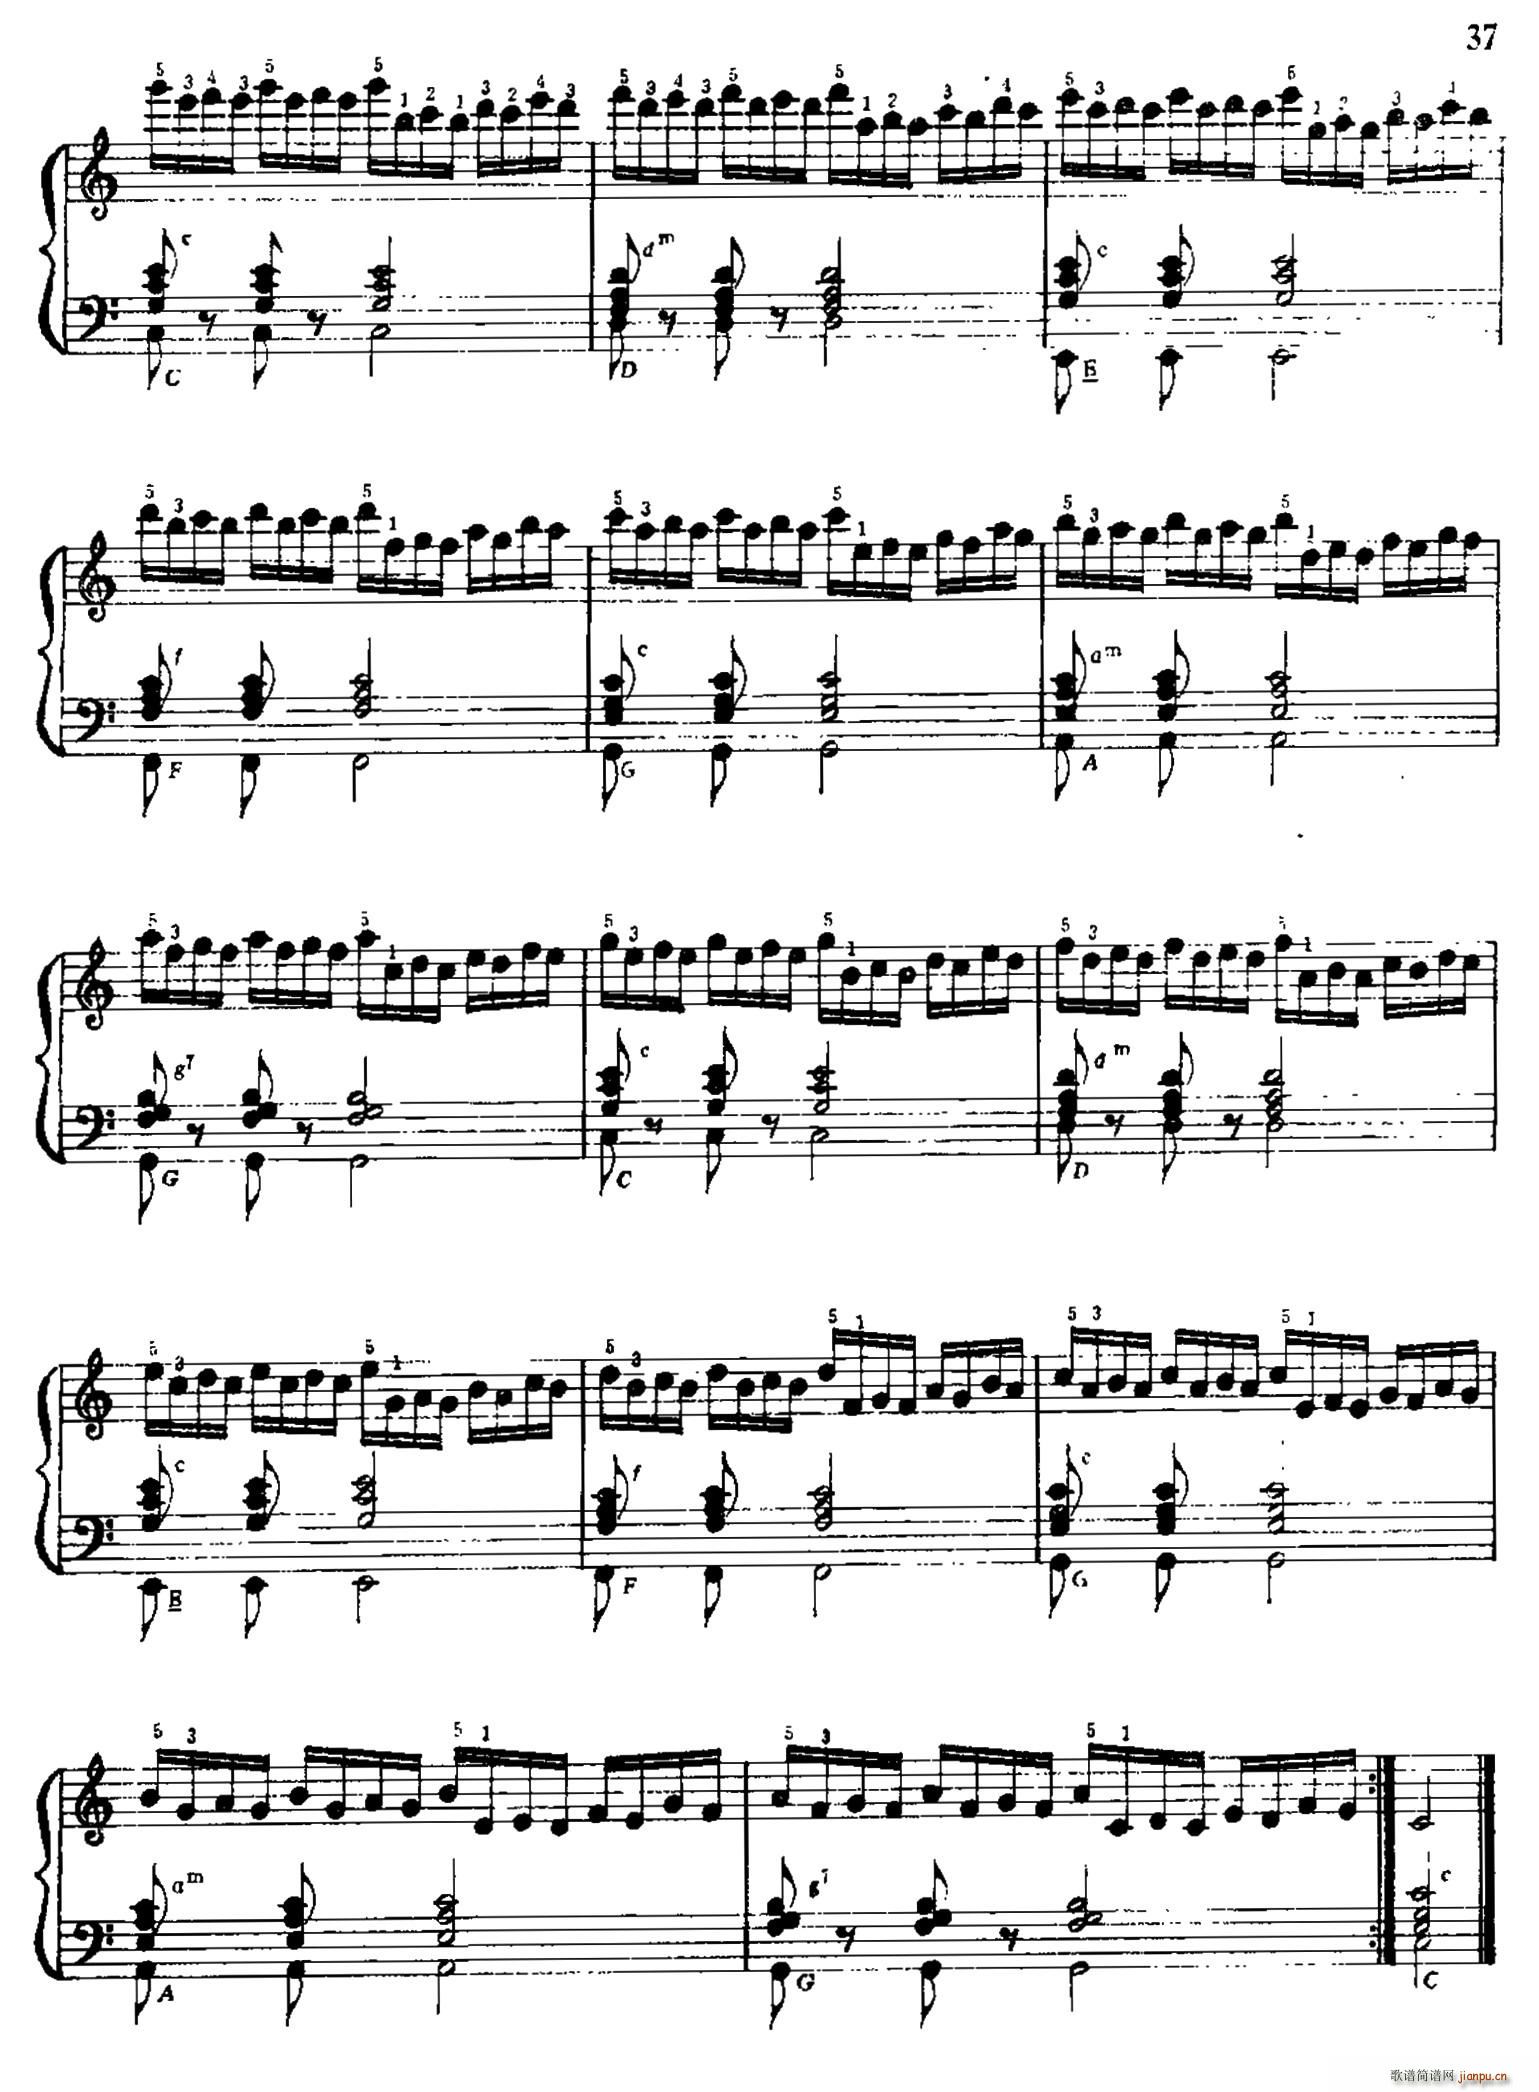 手风琴手指练习 第一部分 21 30(手风琴谱)16